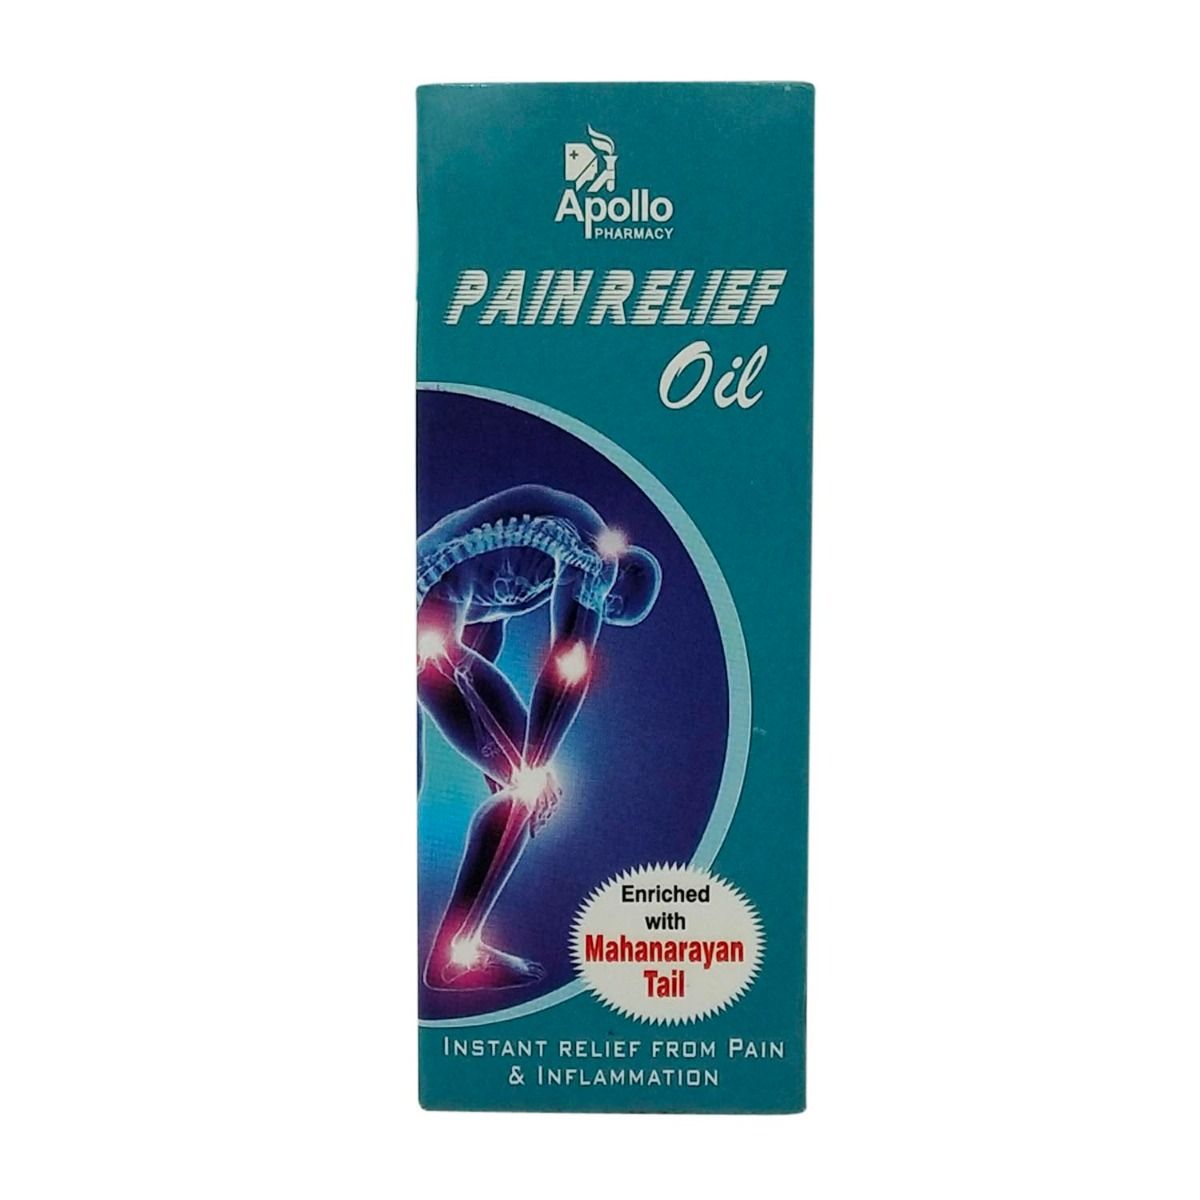 Buy Apollo Pharmacy Pain Relief Oil, 60 ml Online